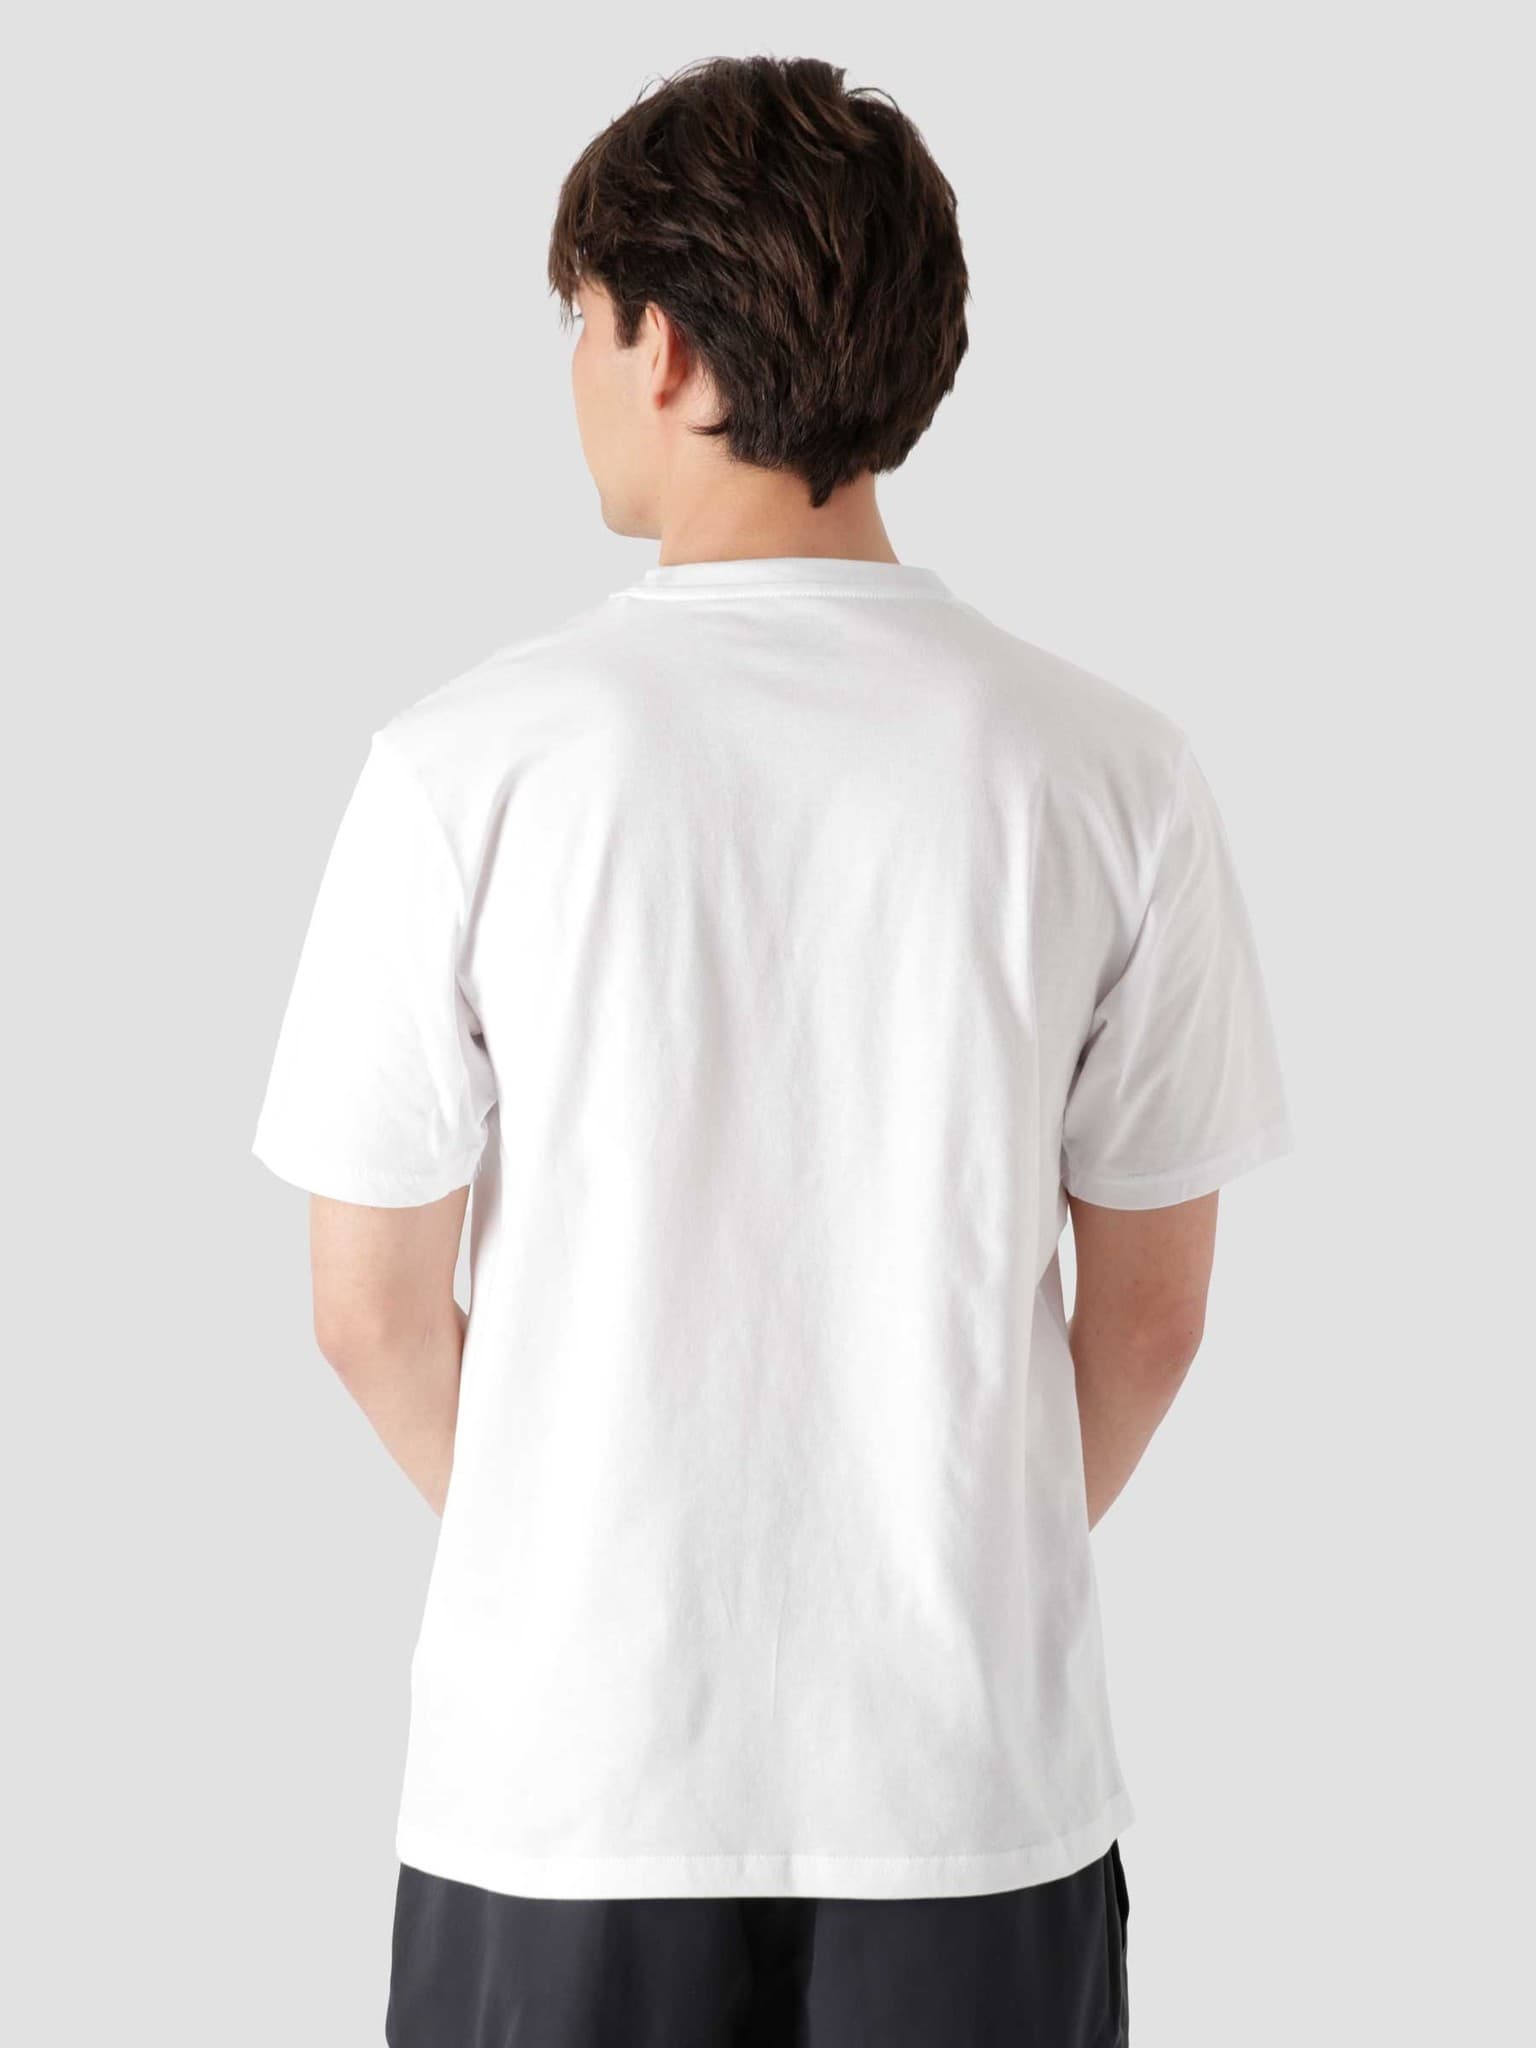 Baudette T-Shirt White DK0A4X9IWHX1